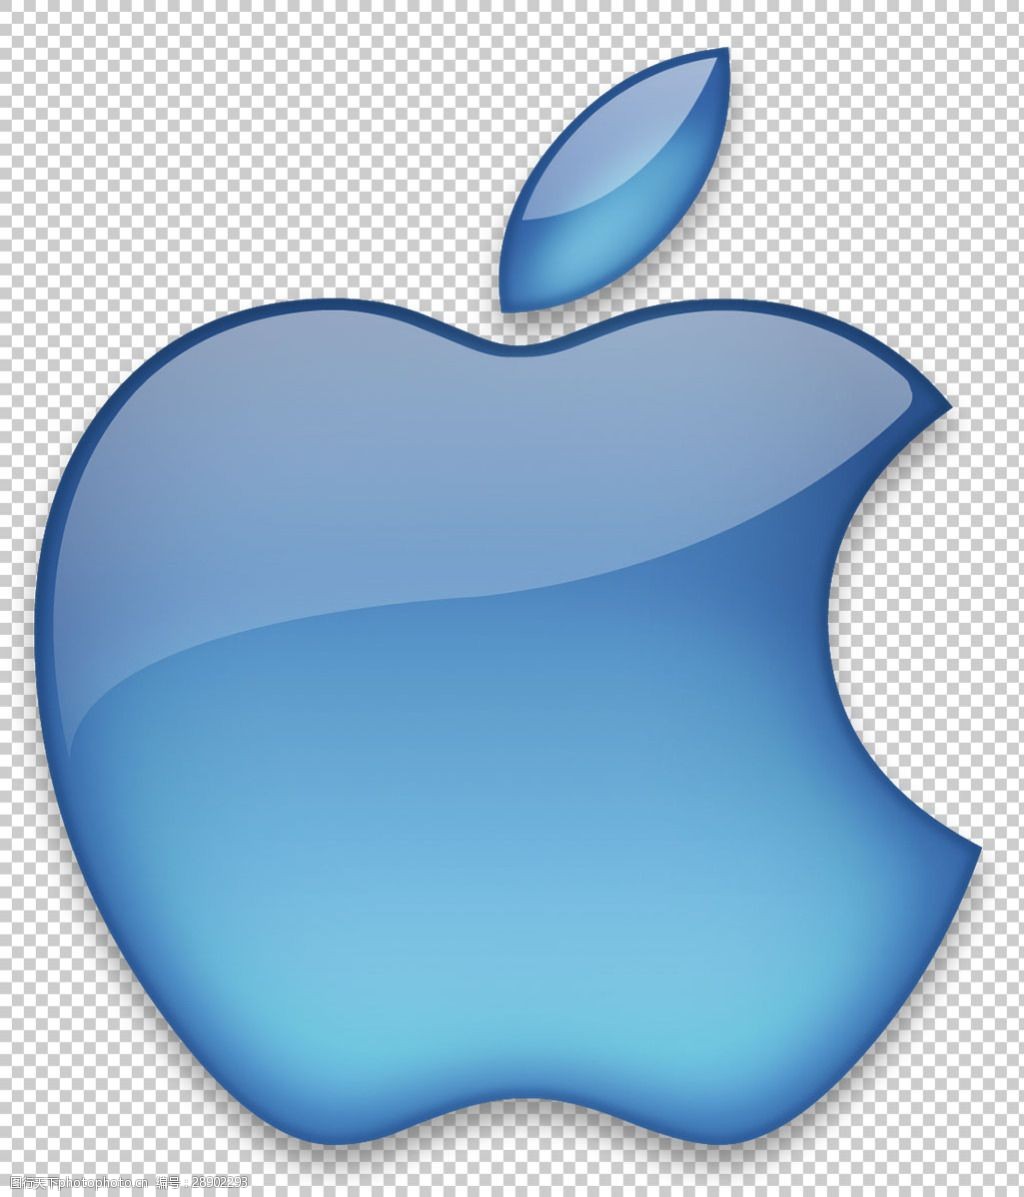 蓝色苹果logo壁纸图片